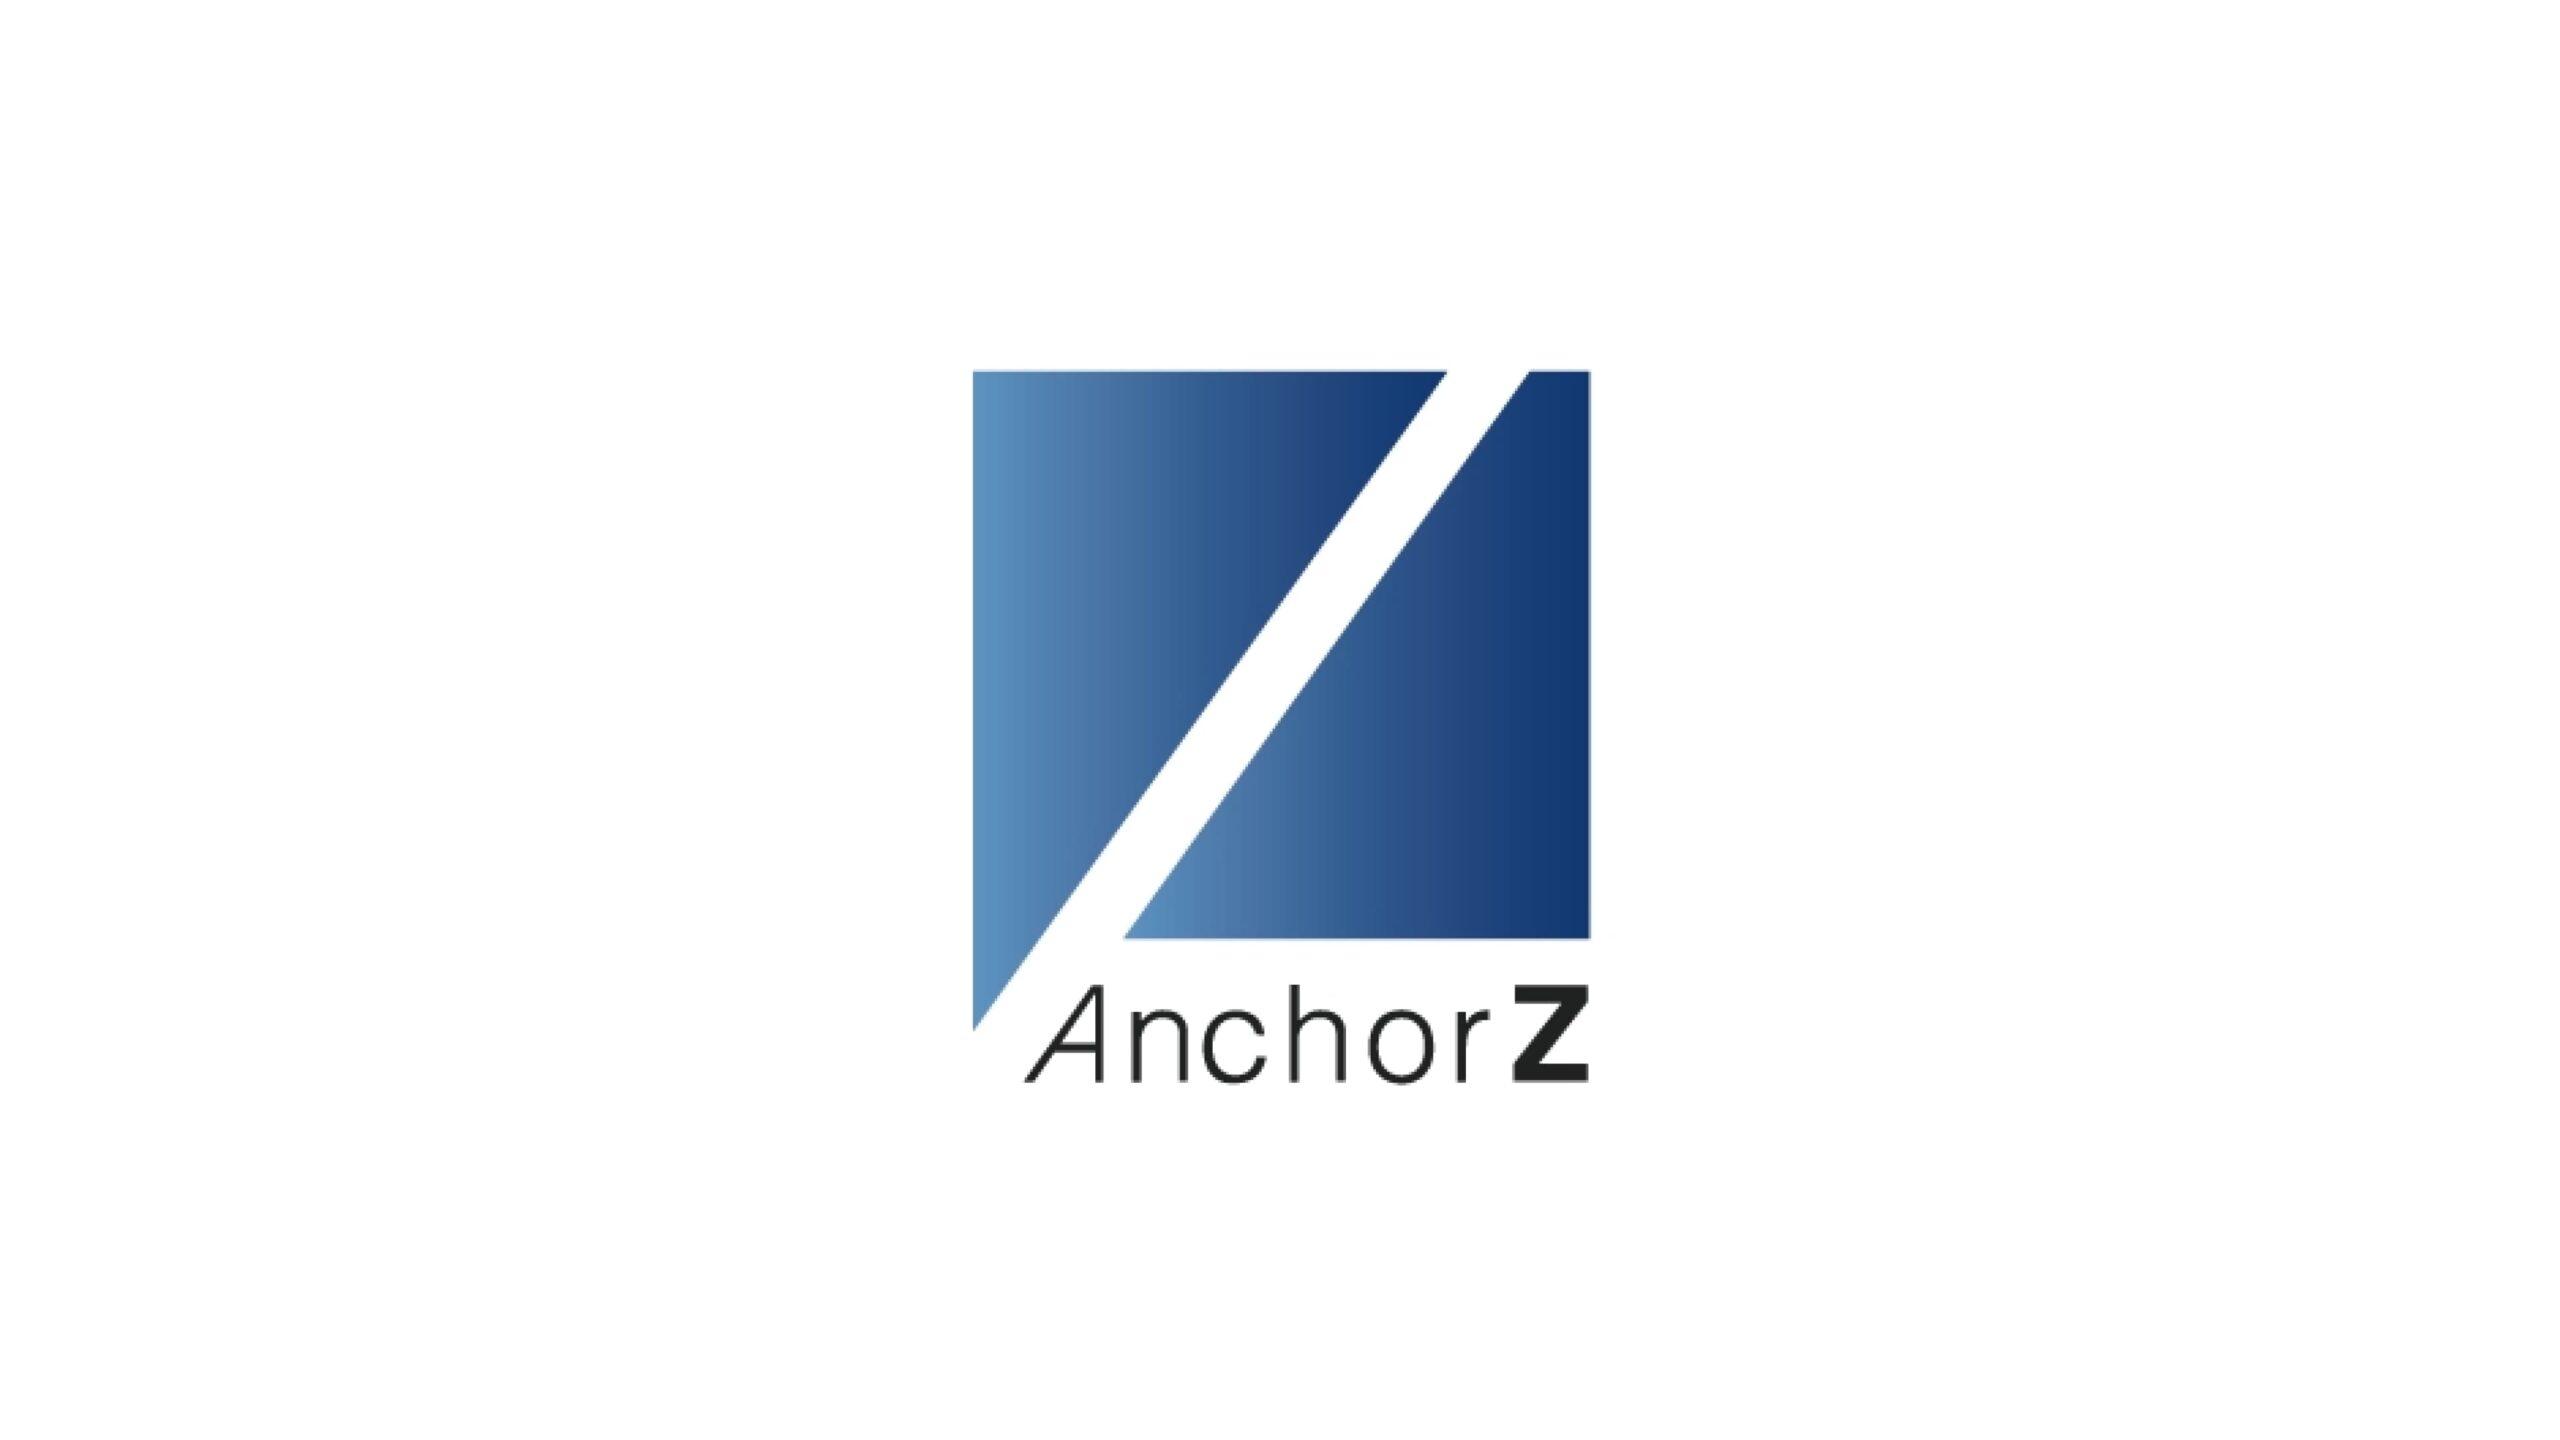 「バックグラウンド認証®︎ 」を開発・展開する株式会社AnchorZ、第三者割当増資により資金調達